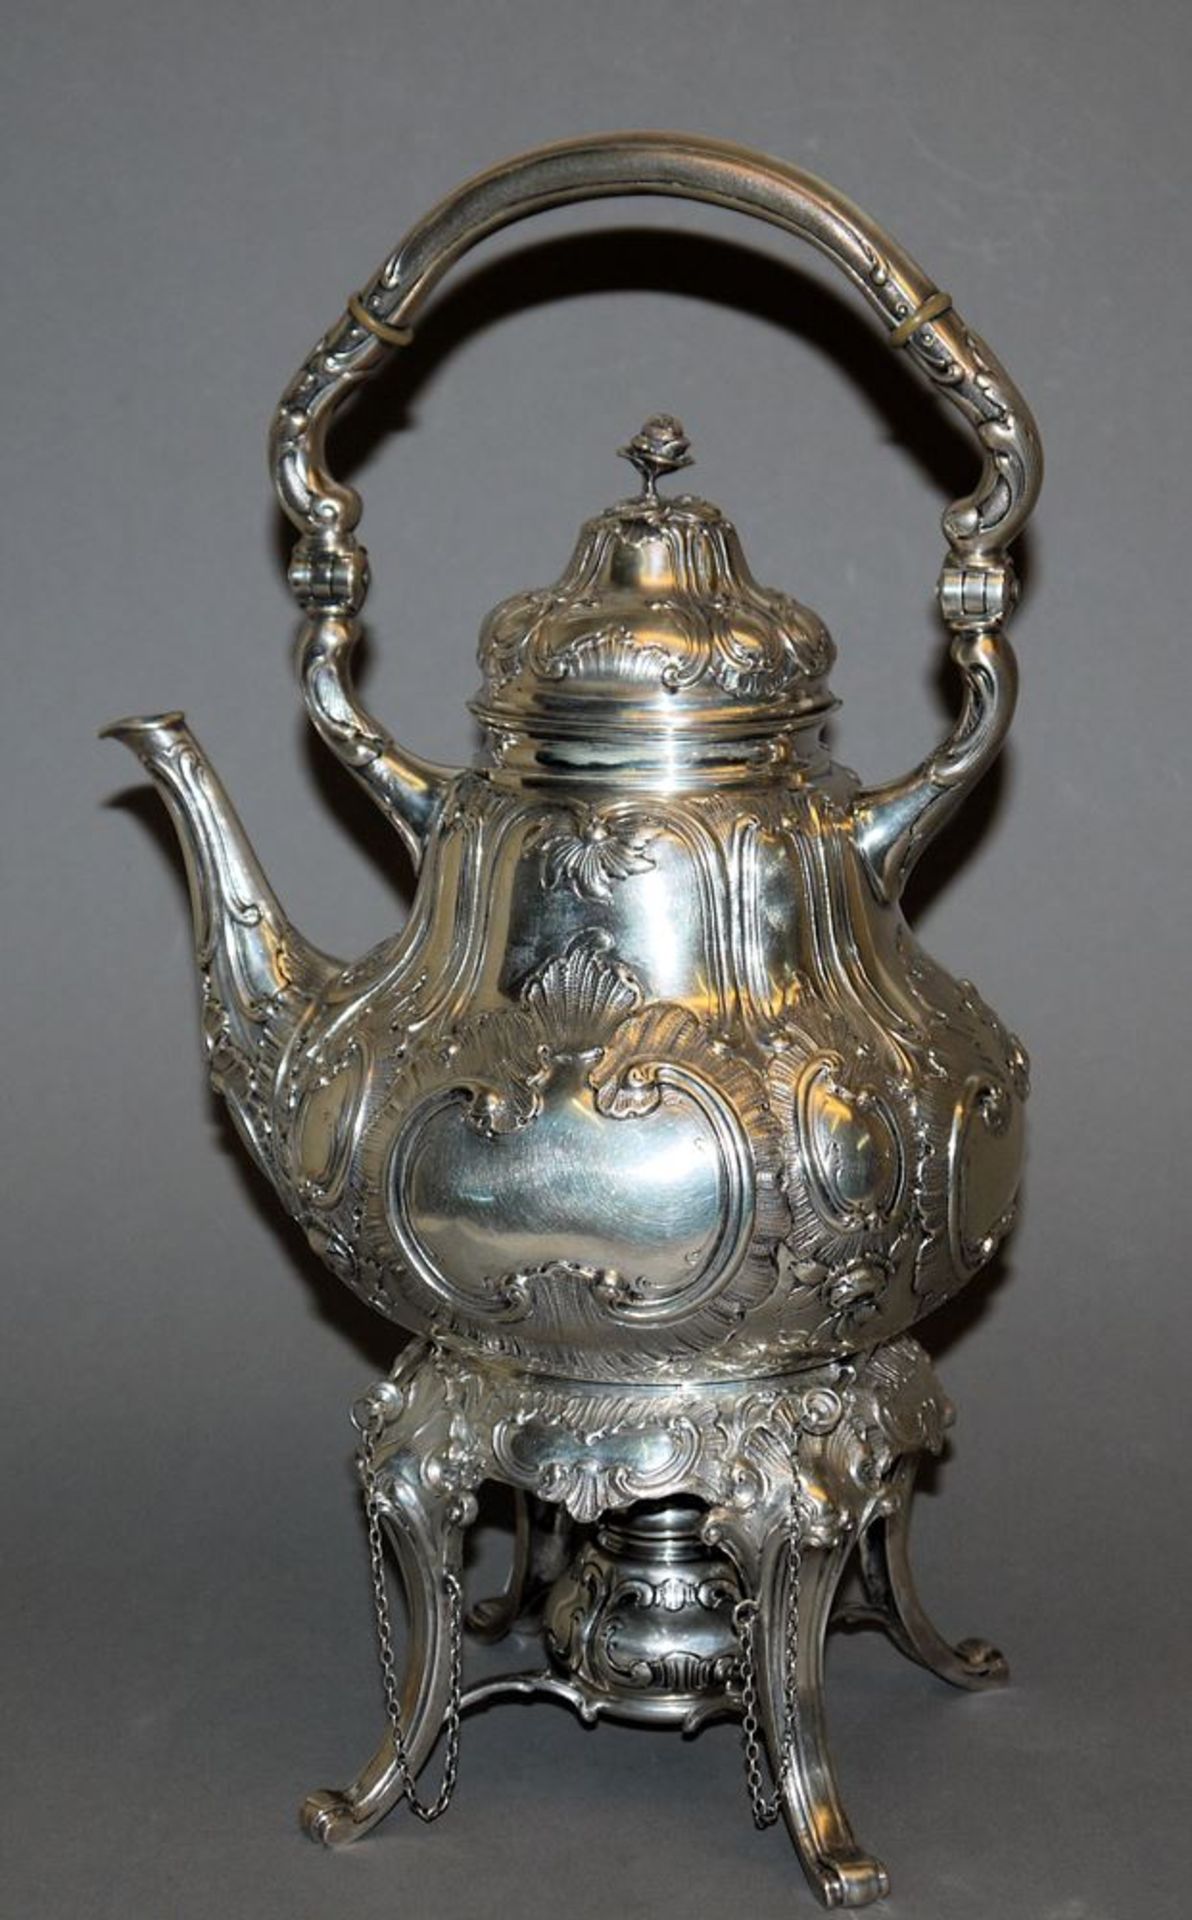 Tee-/Wasserkanne auf Rechaud, Silber, um 1900/20 - Bild 2 aus 2